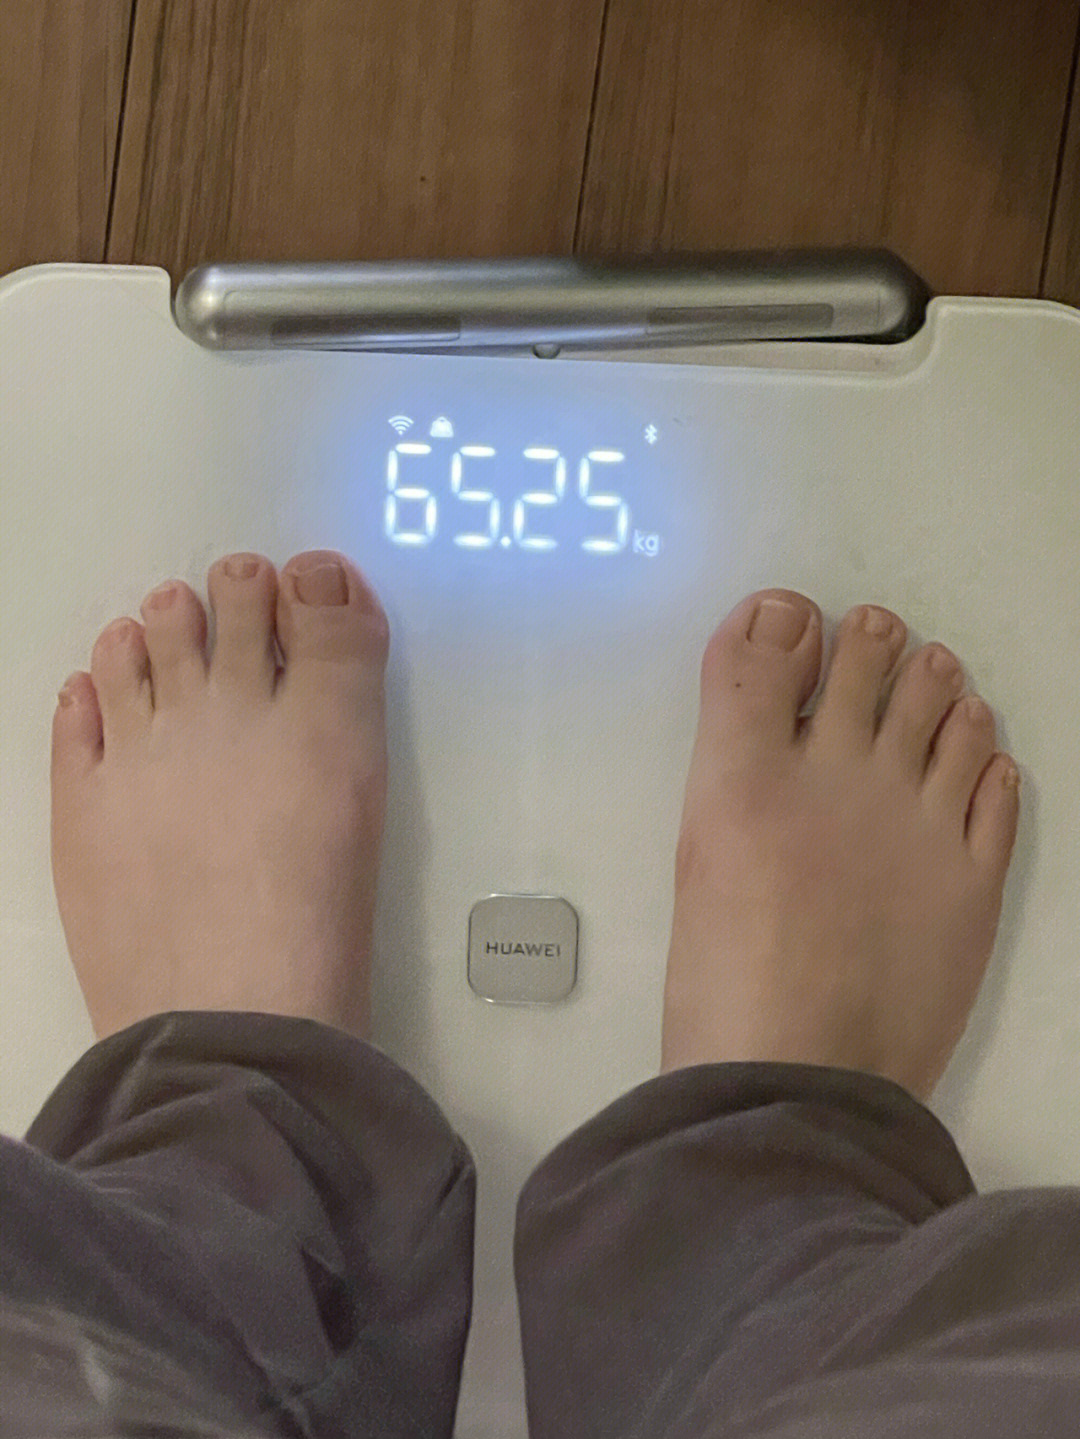 8kg今日体重:6525kg比昨天回升了,但是比前天还是下降的!